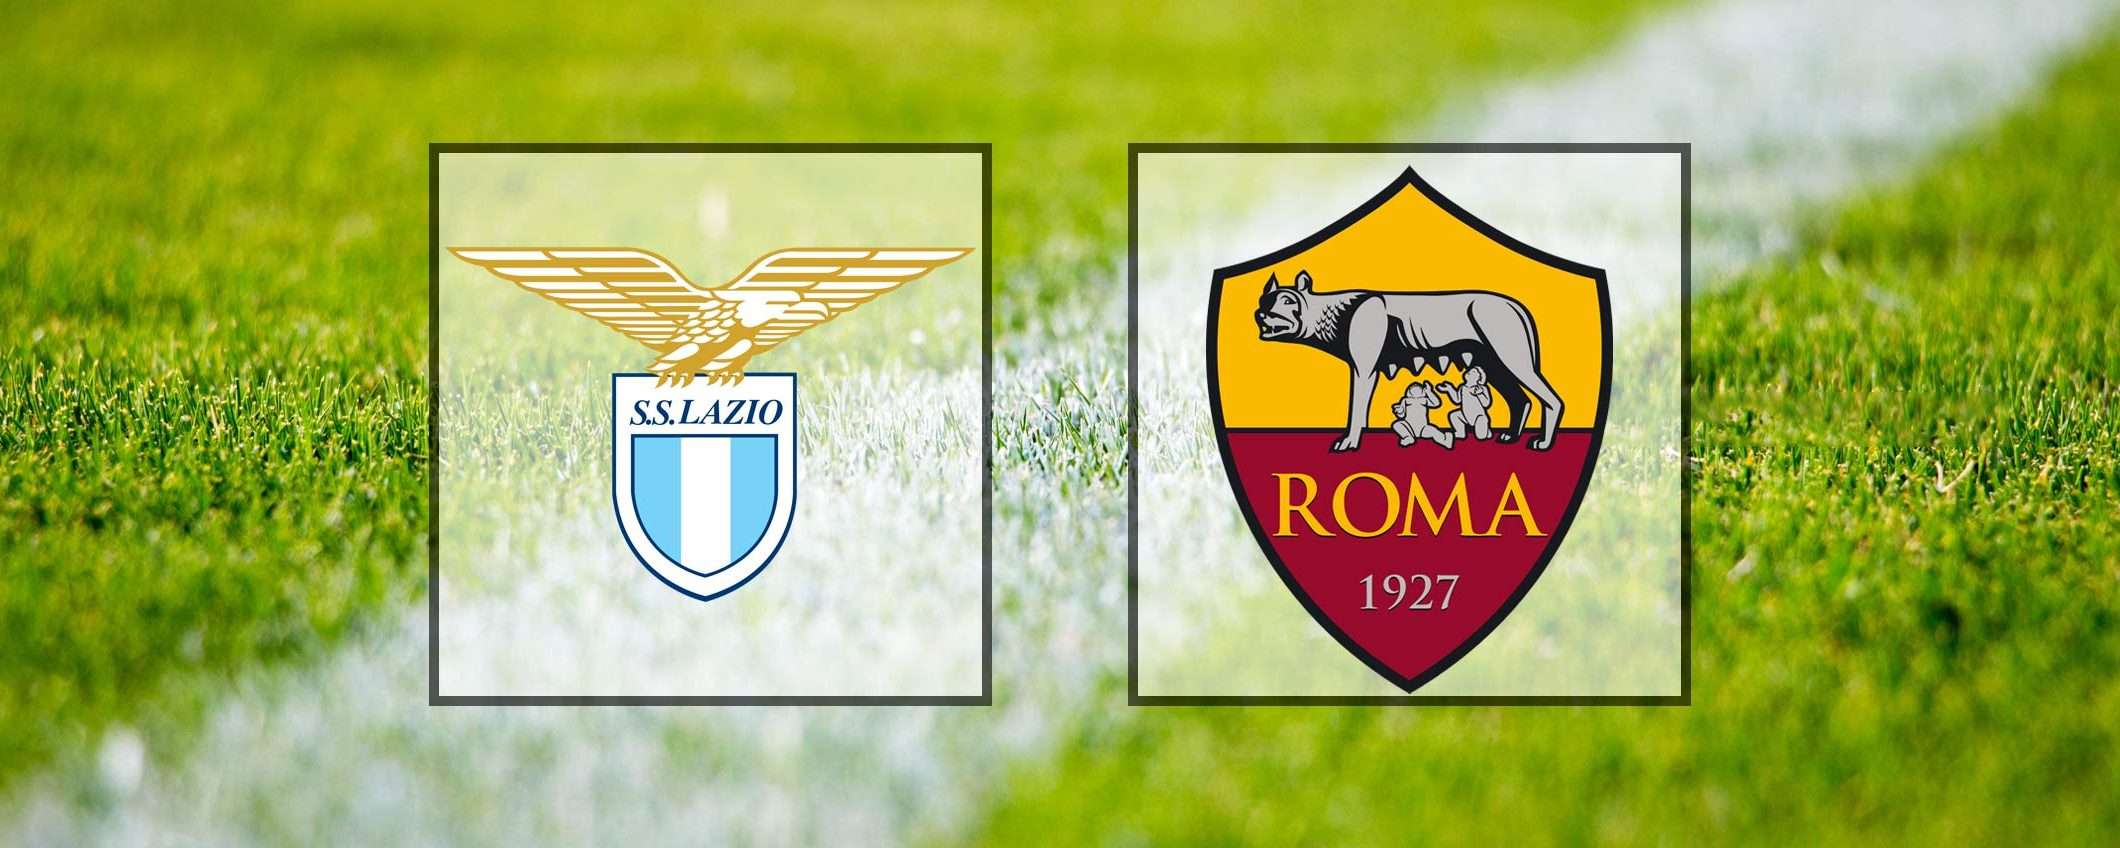 Come vedere Lazio-Roma in streaming (Serie A)